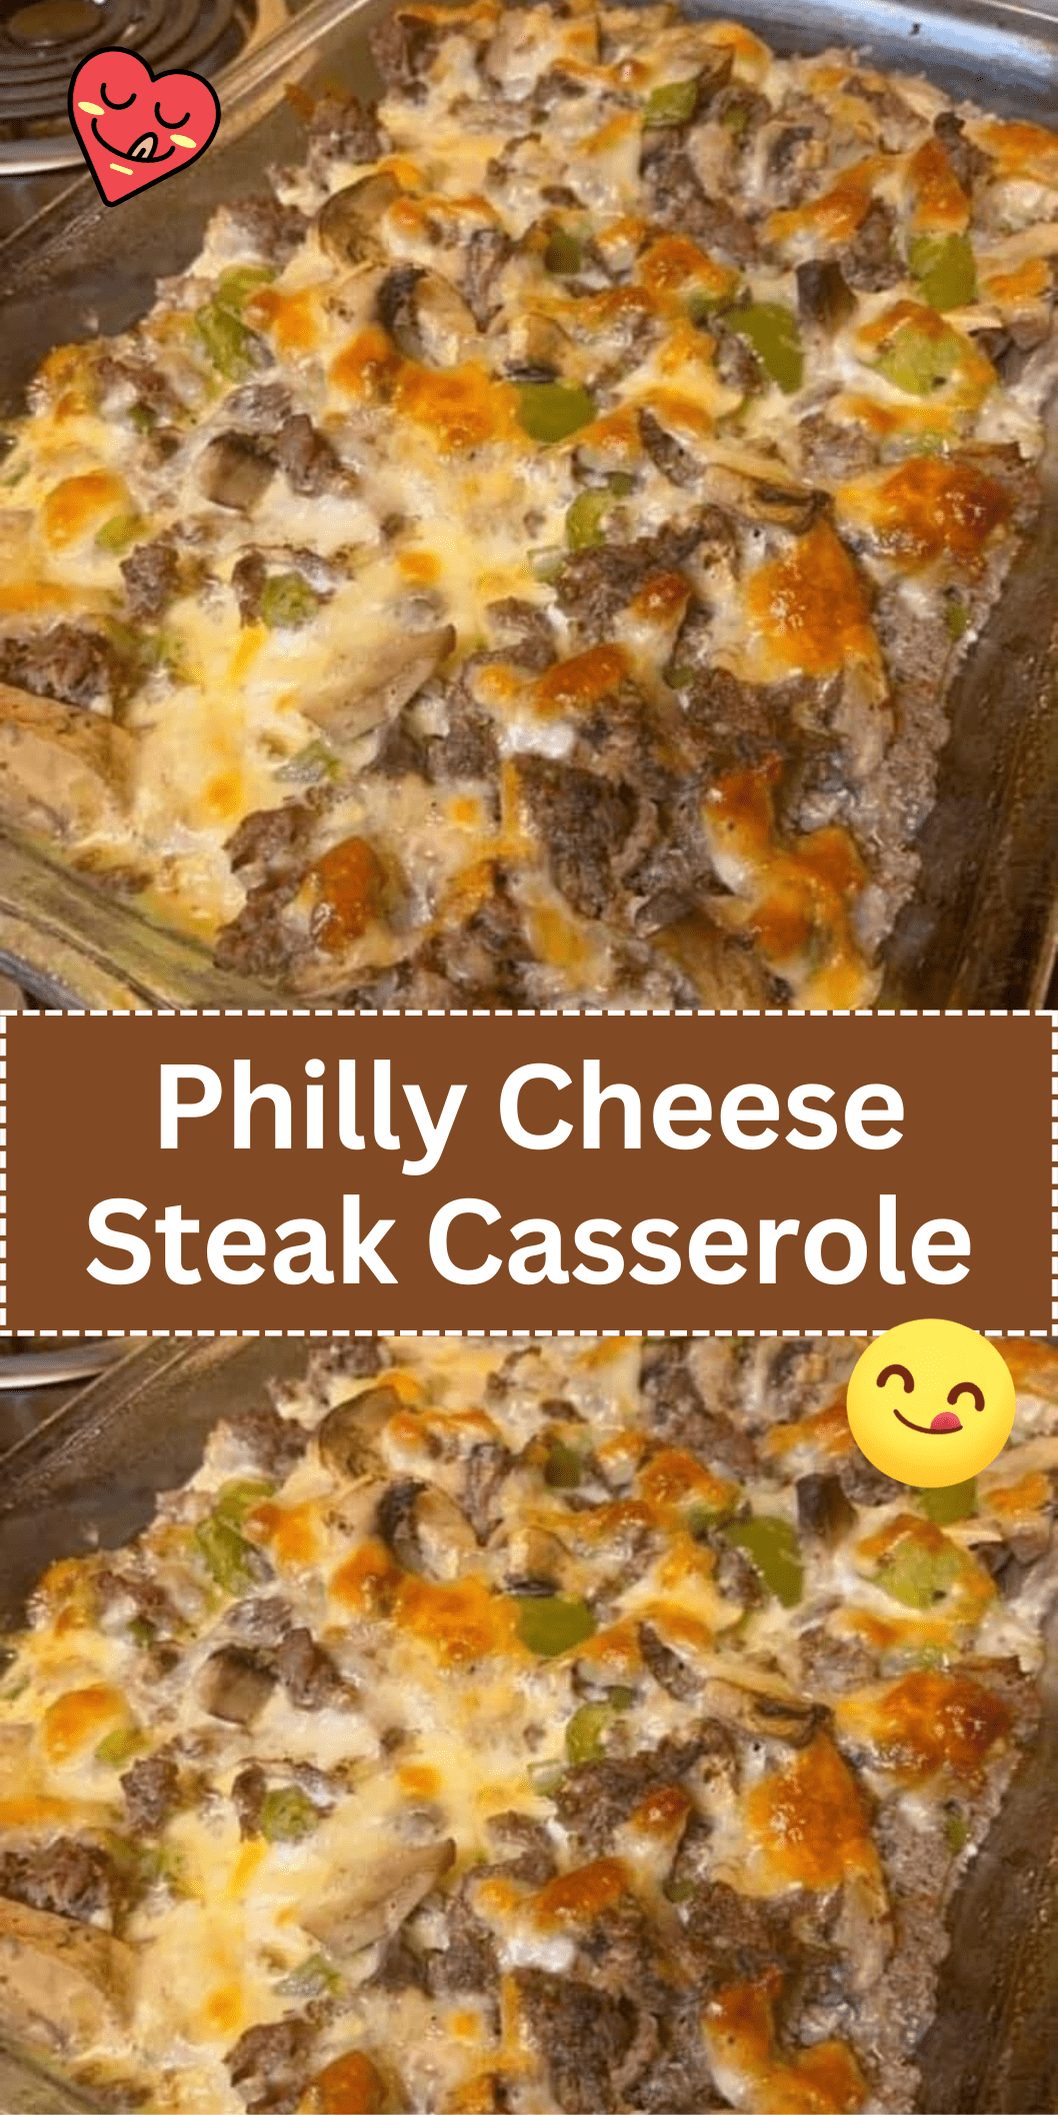 Philly Cheese Steak Casserole